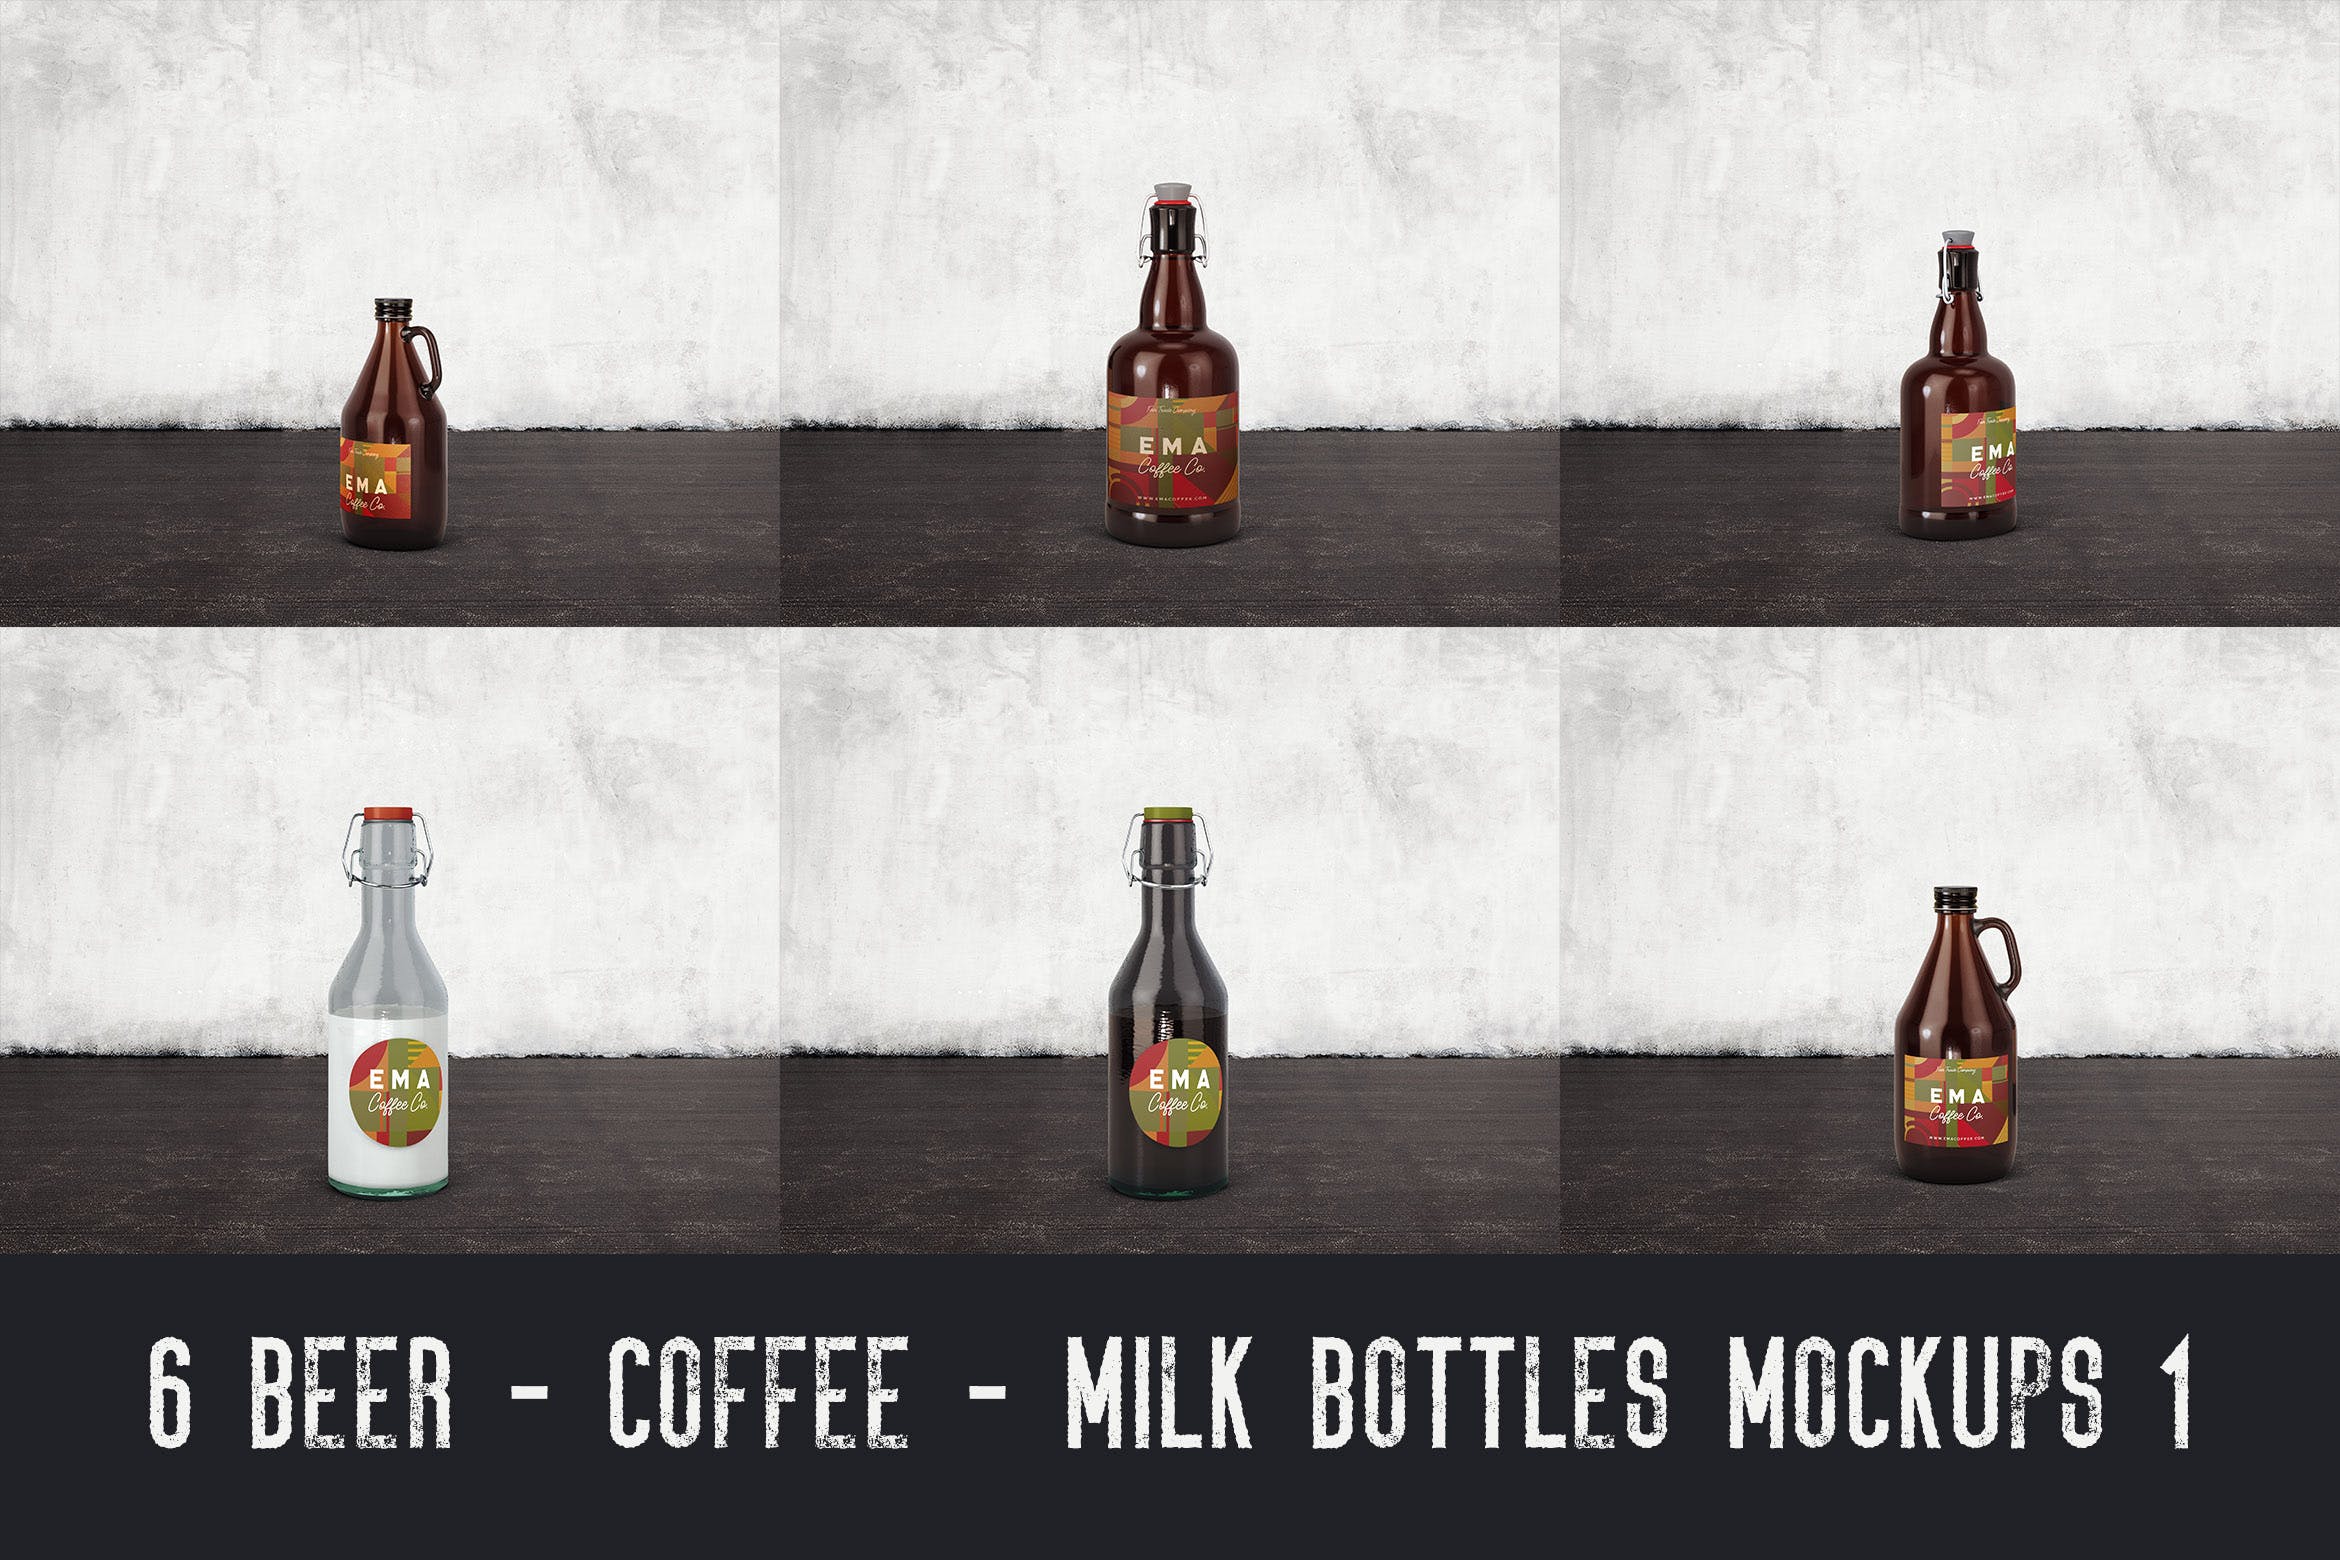 6个啤酒/咖啡/牛奶瓶外观设计16图库精选v1 6 Beer Coffee Milk Bottles Mockups 1插图